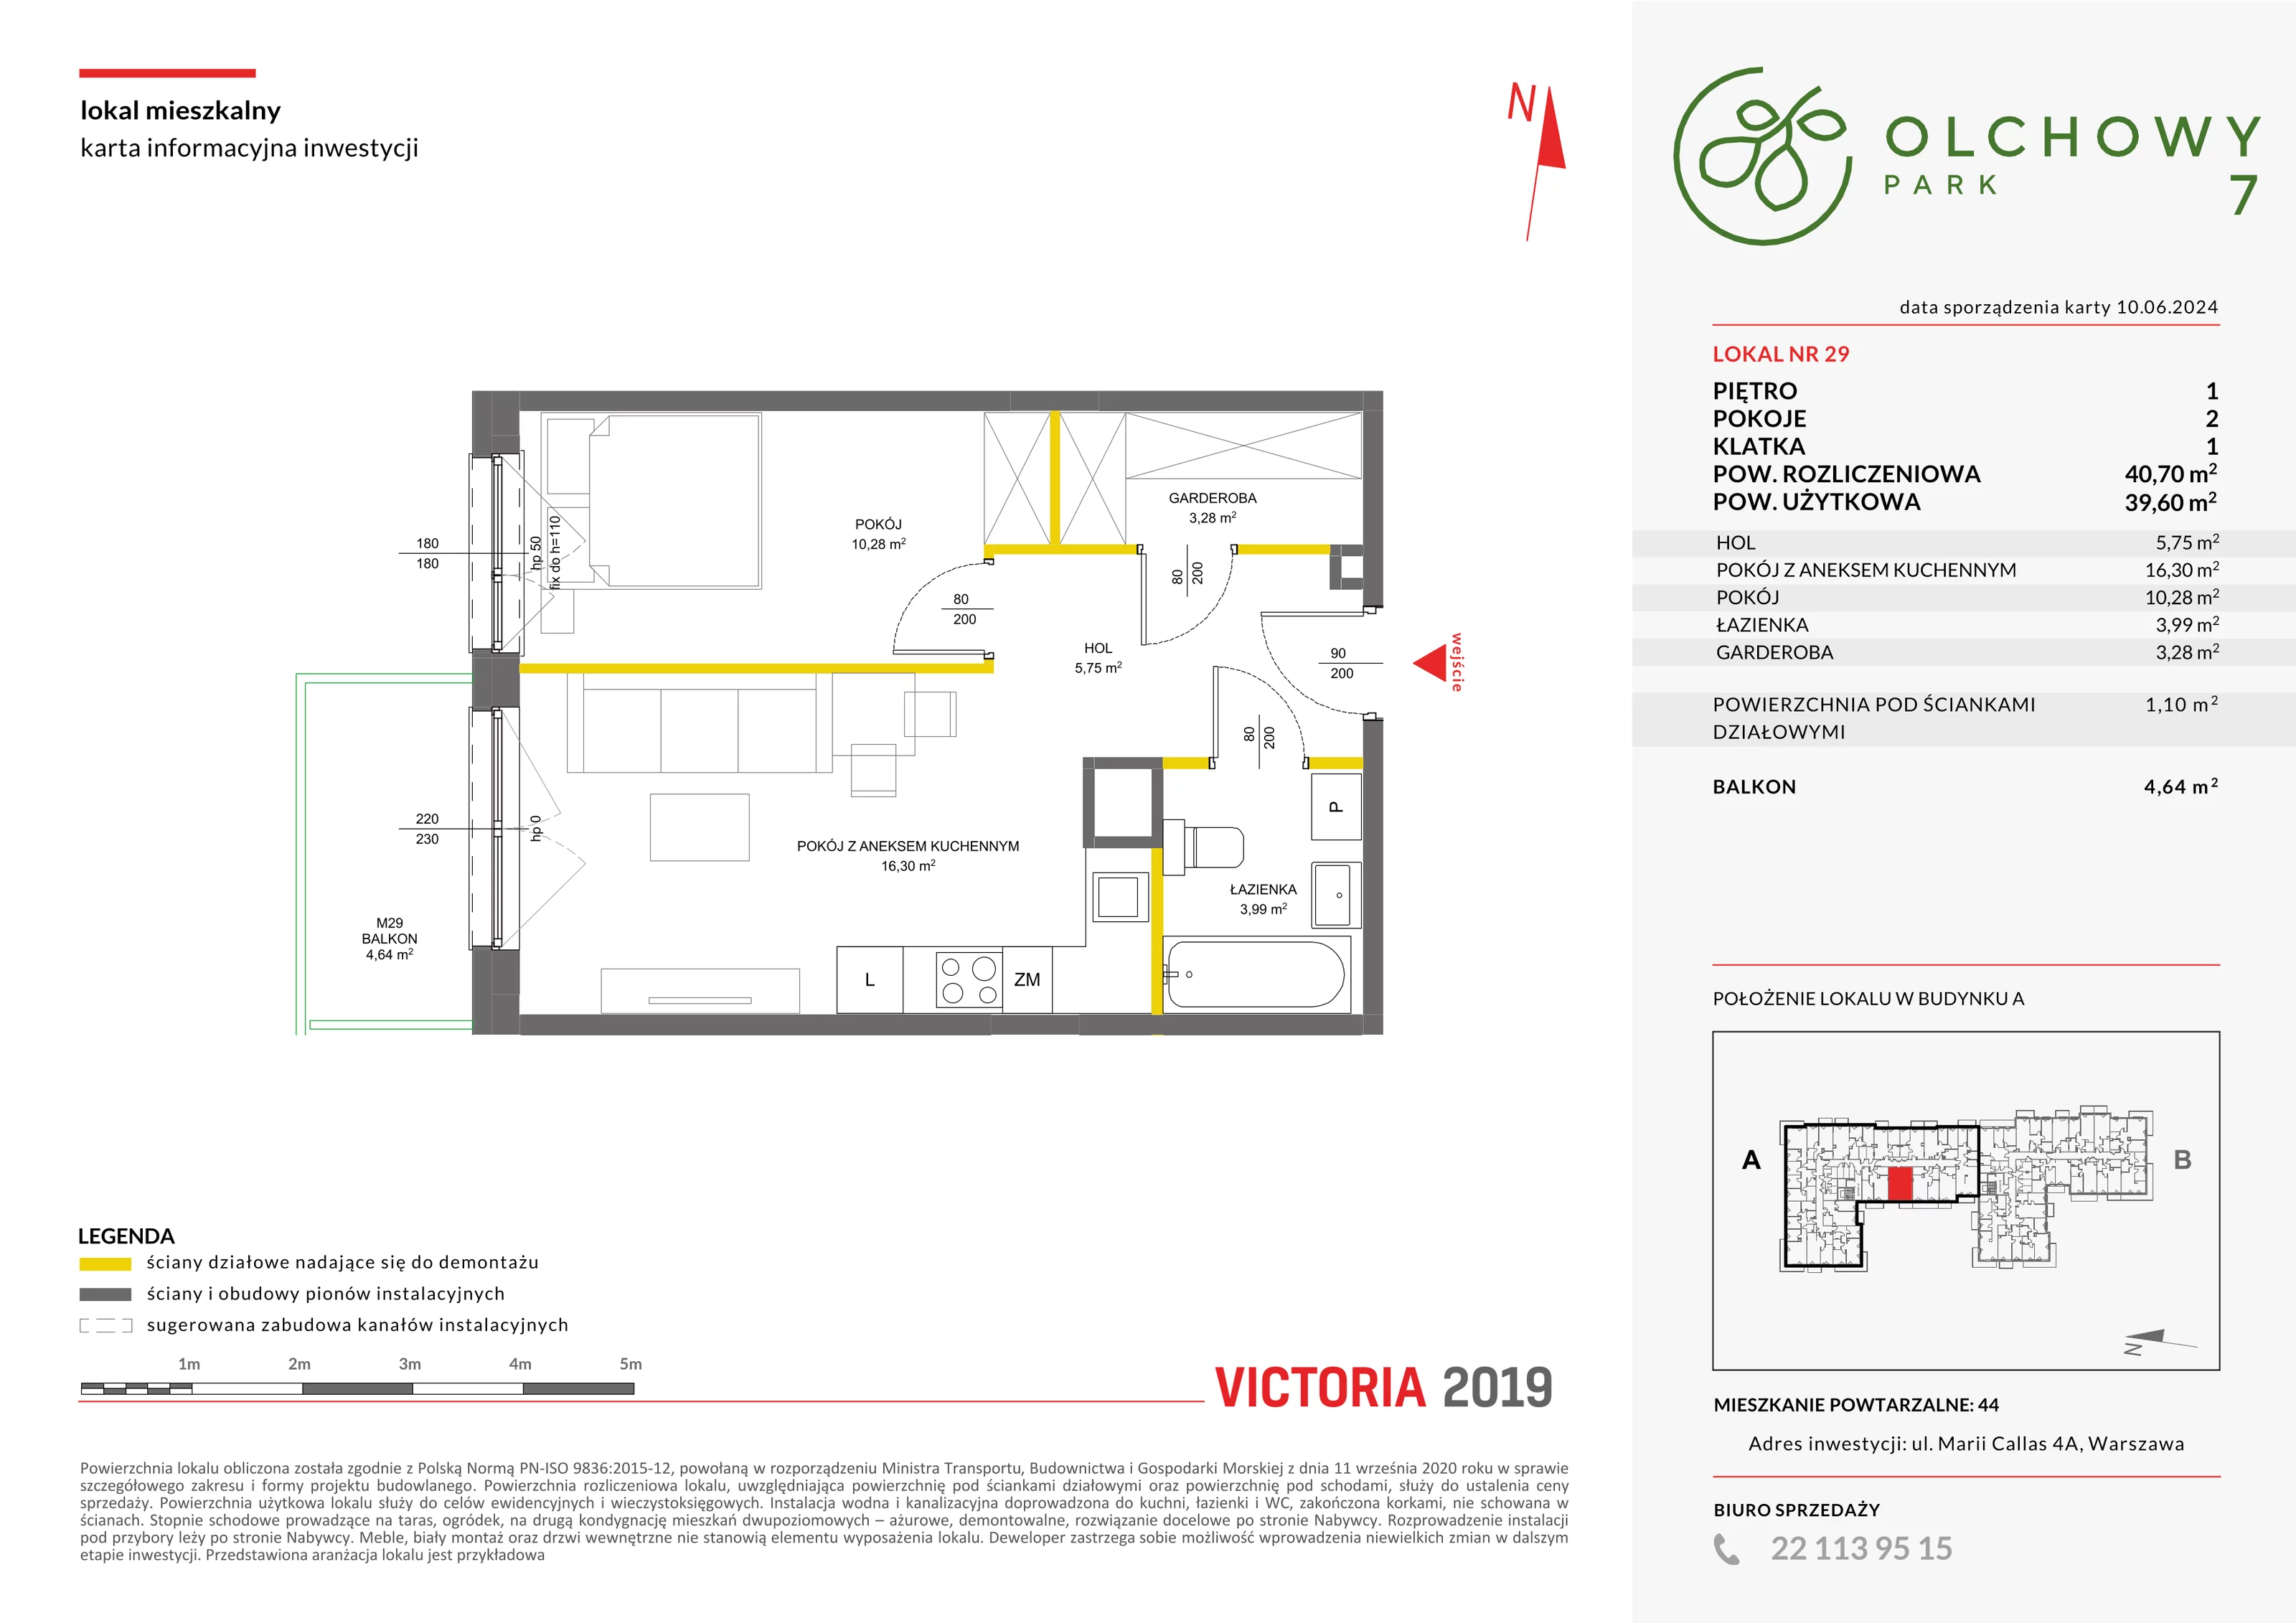 Mieszkanie 40,70 m², piętro 1, oferta nr VII/29, Olchowy Park 7, Warszawa, Białołęka, Kobiałka, ul. Marii Callas 4A